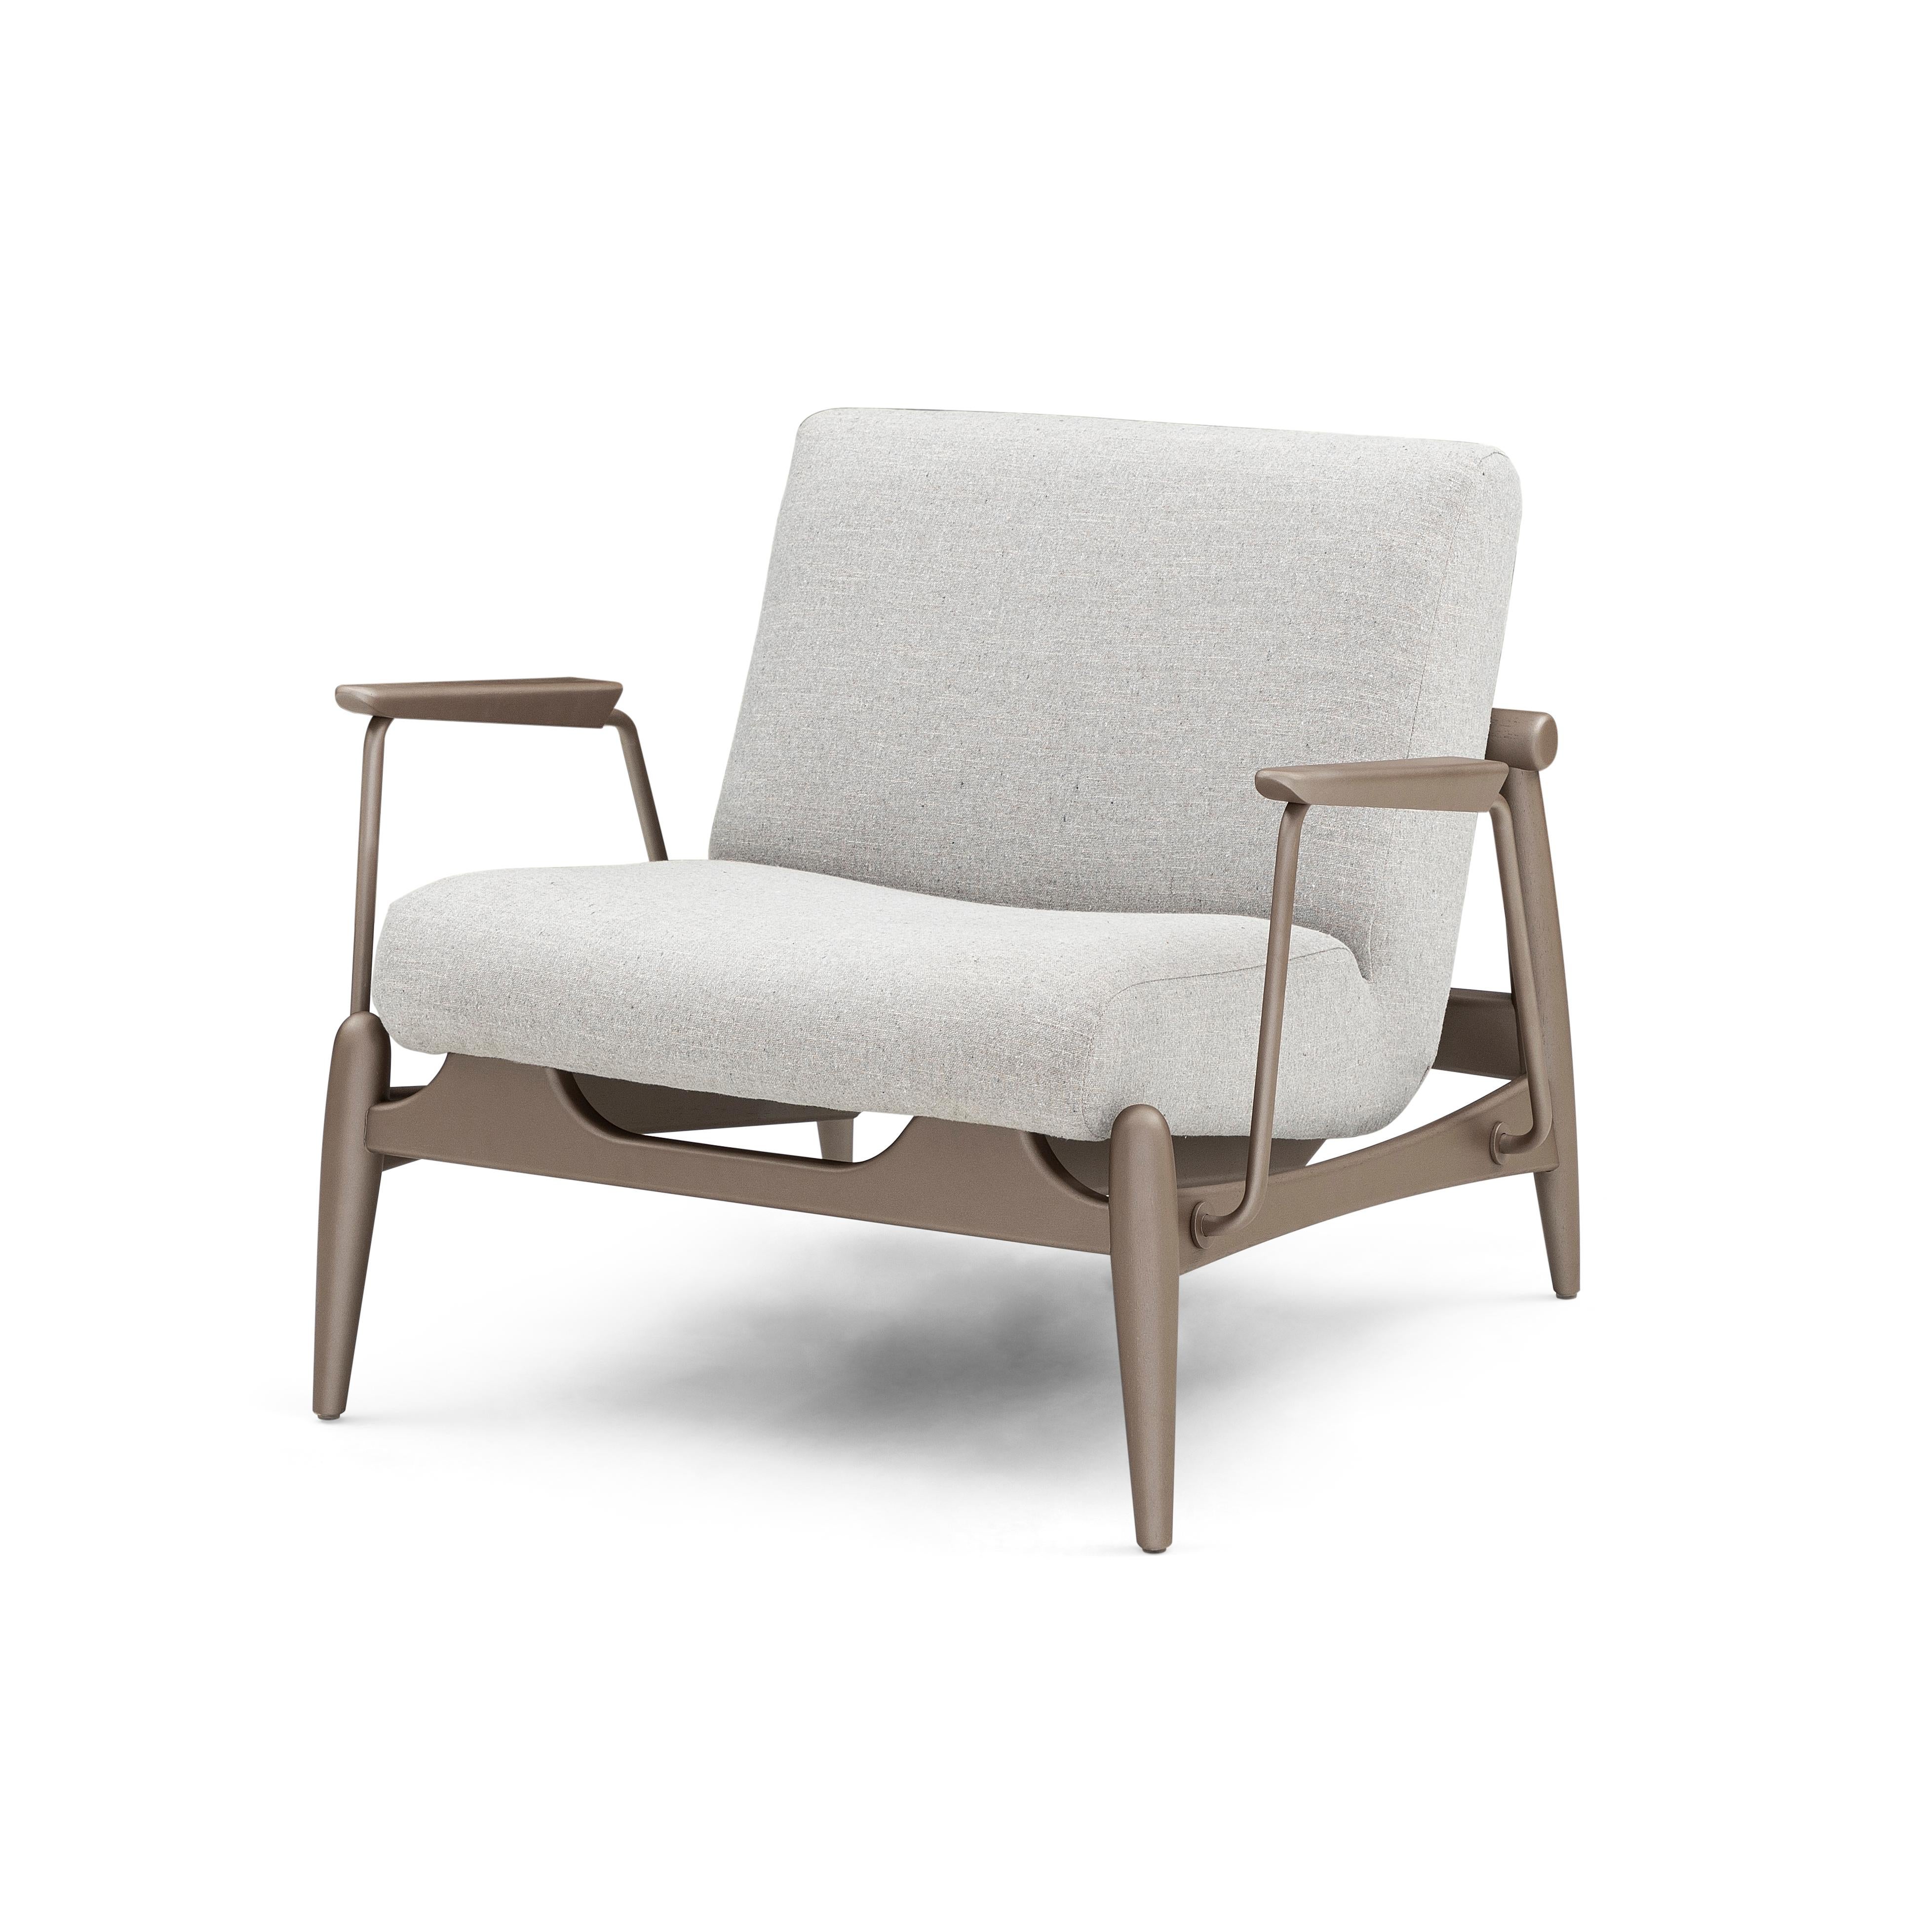 Der Sessel Win verfügt über Metallbeschläge und ein Gestell aus braunem Holz, das mit einem schönen hellgrauen Stoff bezogen ist. Unser erstaunliches Uultis Design Team hat diesen Sessel für Ihren Komfort und Ihre Unterstützung entworfen, den Sie in